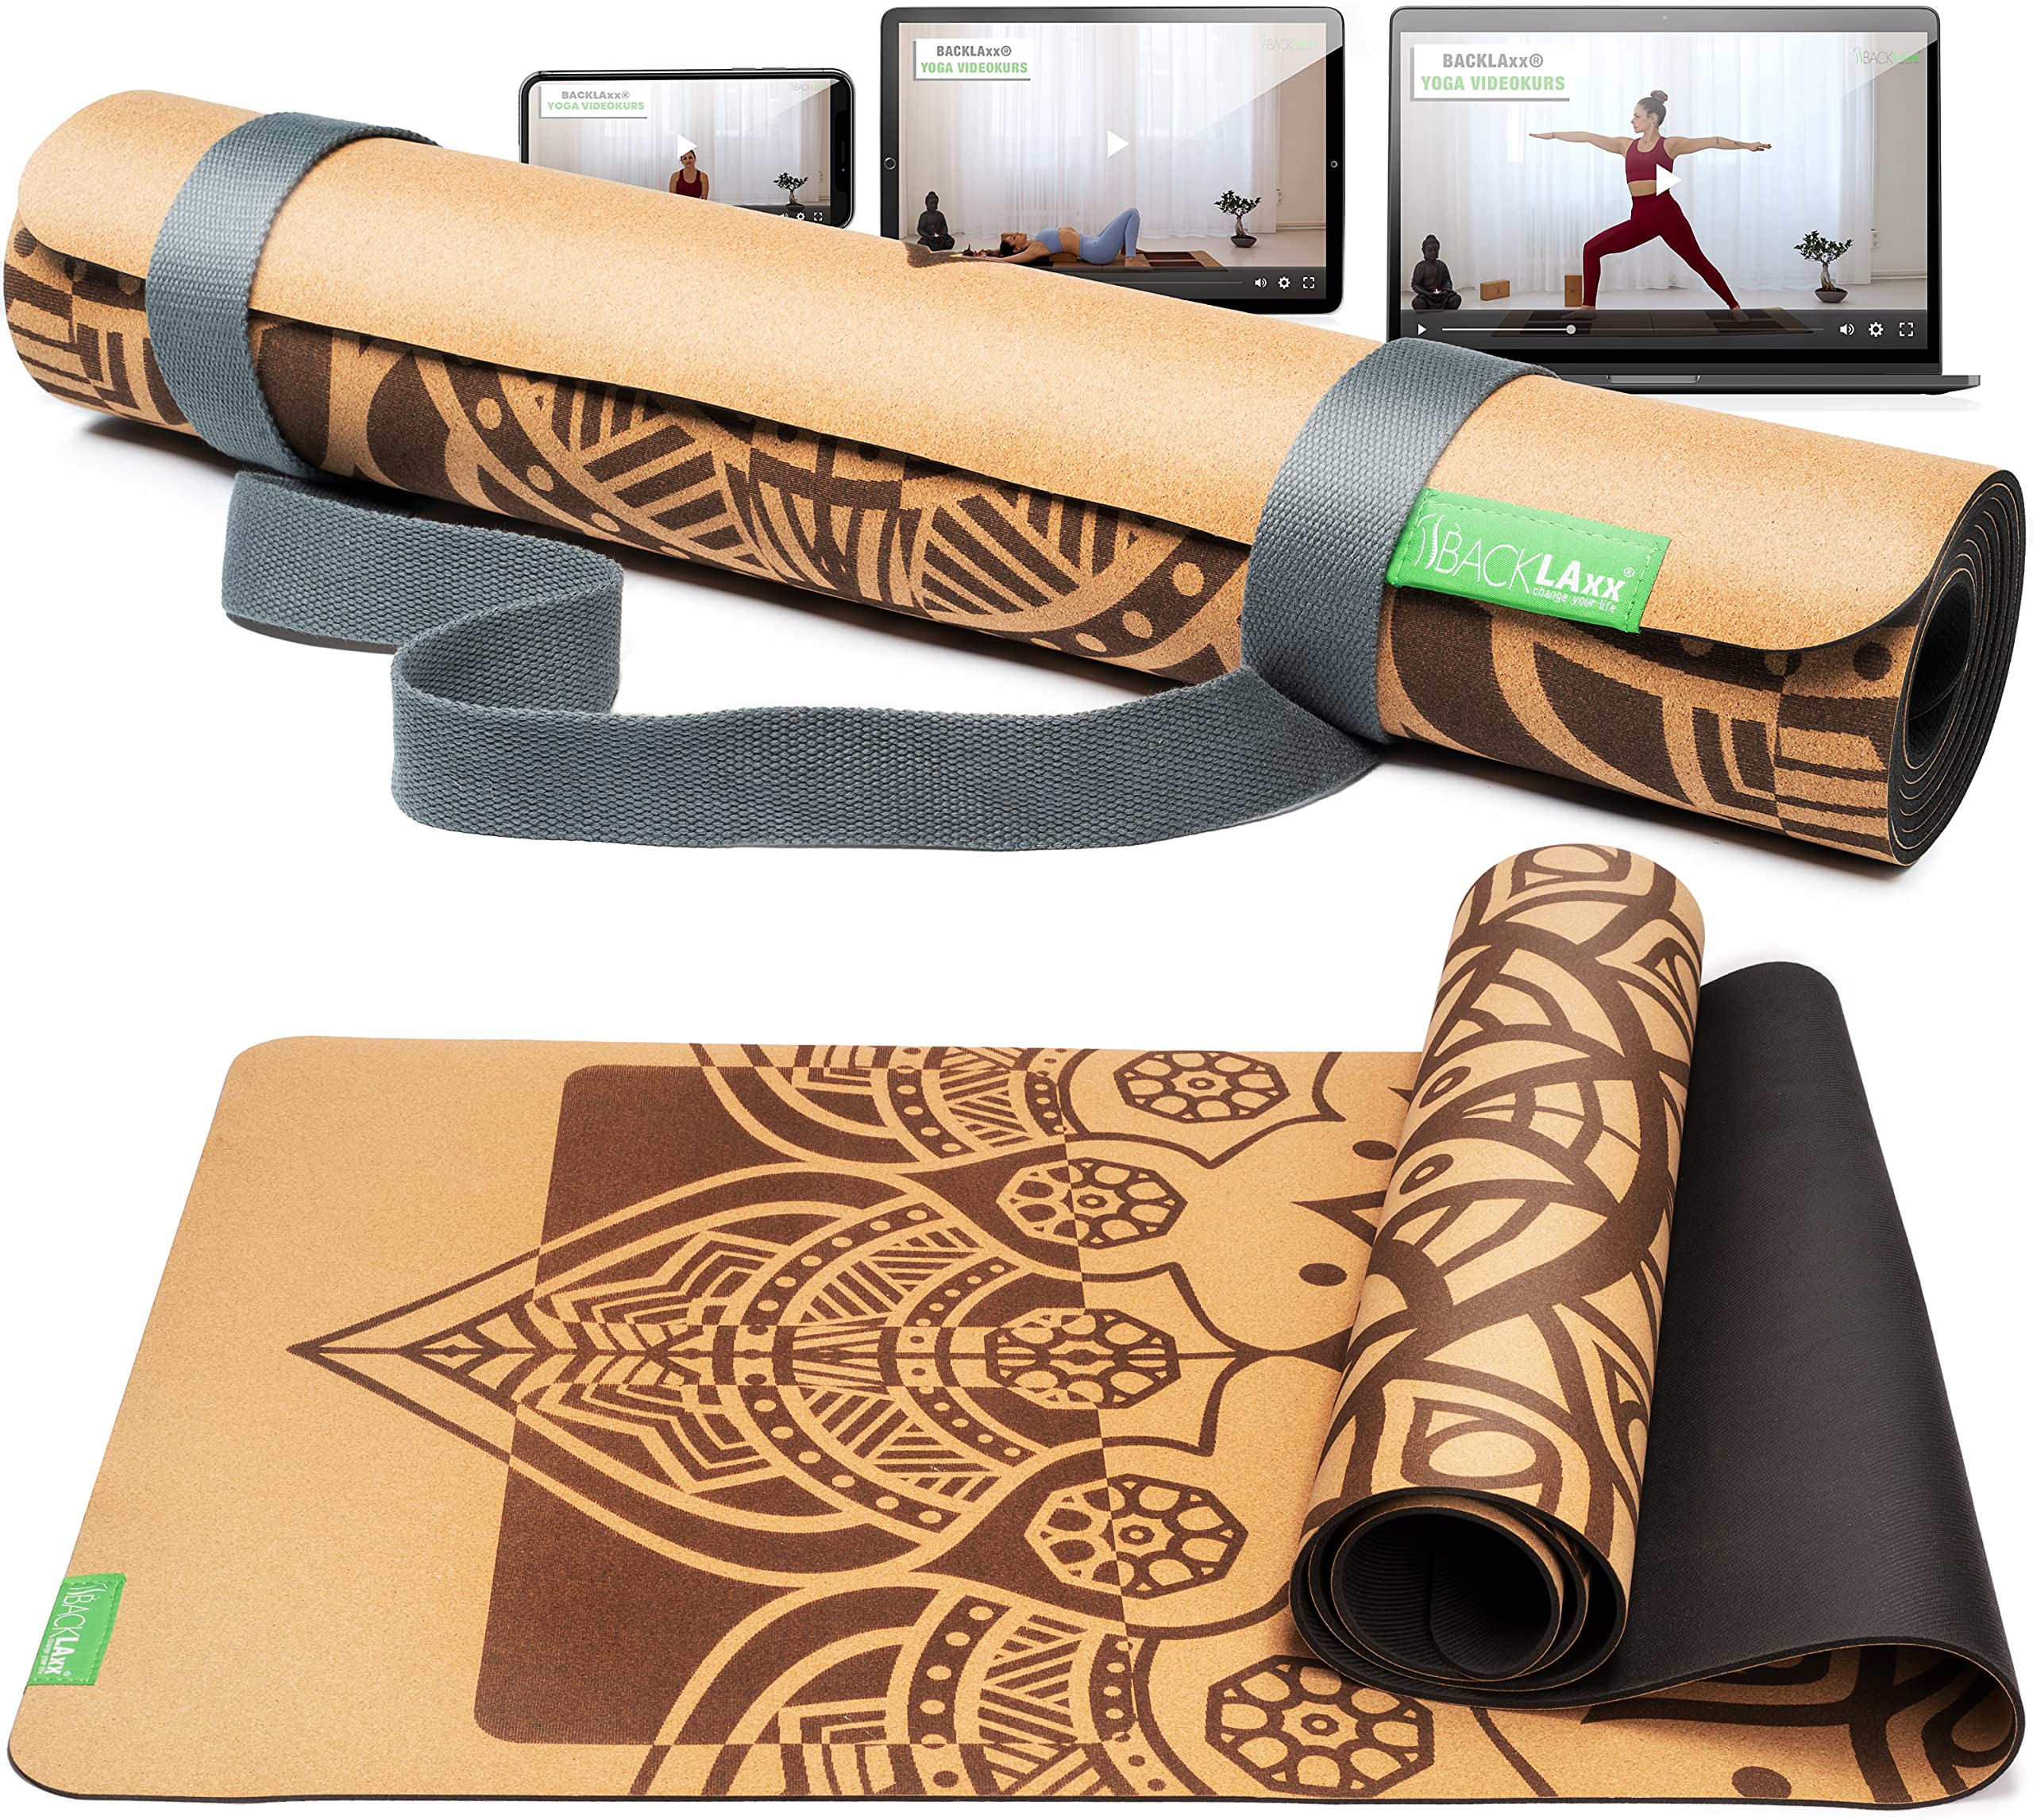 BACKLAxx® Yogamatte Kork mit Naturkautschuk - Yoga Matte nachhaltig, schadstofffrei, Yogamatte rutschfest, Fitnessmatte mit Anti-Rutsch-Zonen inkl. Tragegurt, Turnmatte für Yoga und Matte Sport